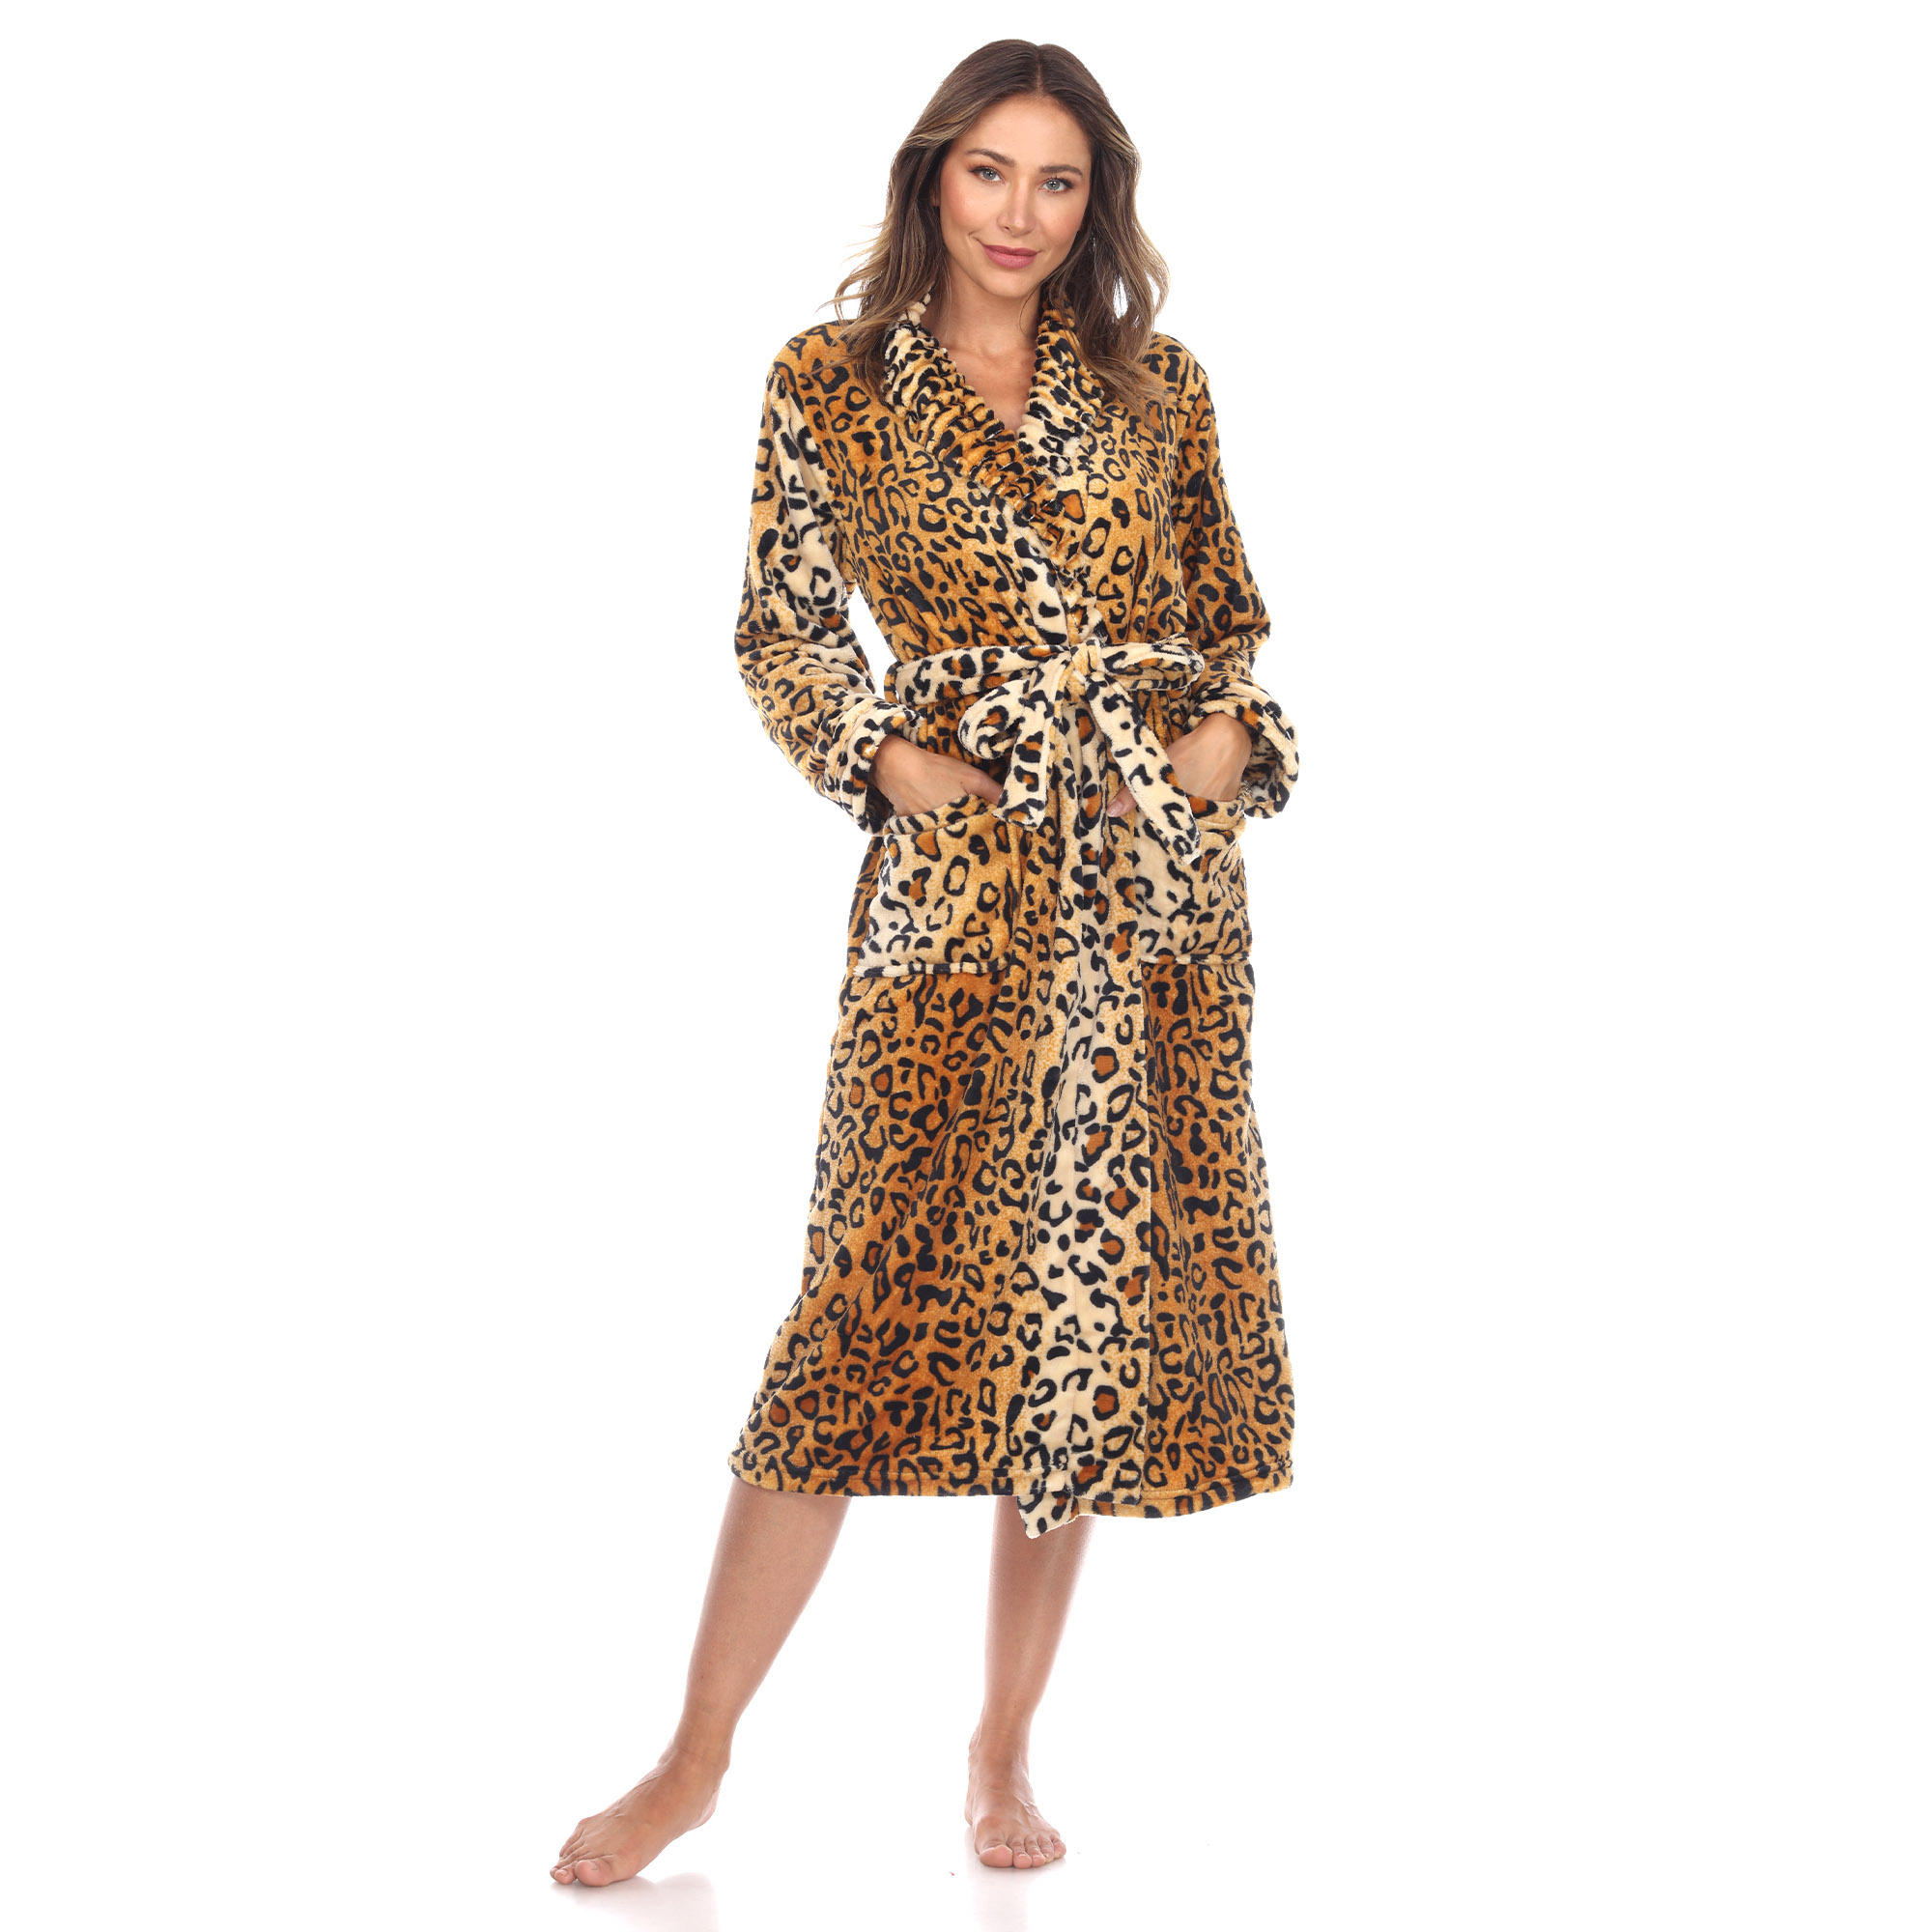 White Mark Women's Cozy Lounge Robe - Brown Leopard, L/XL